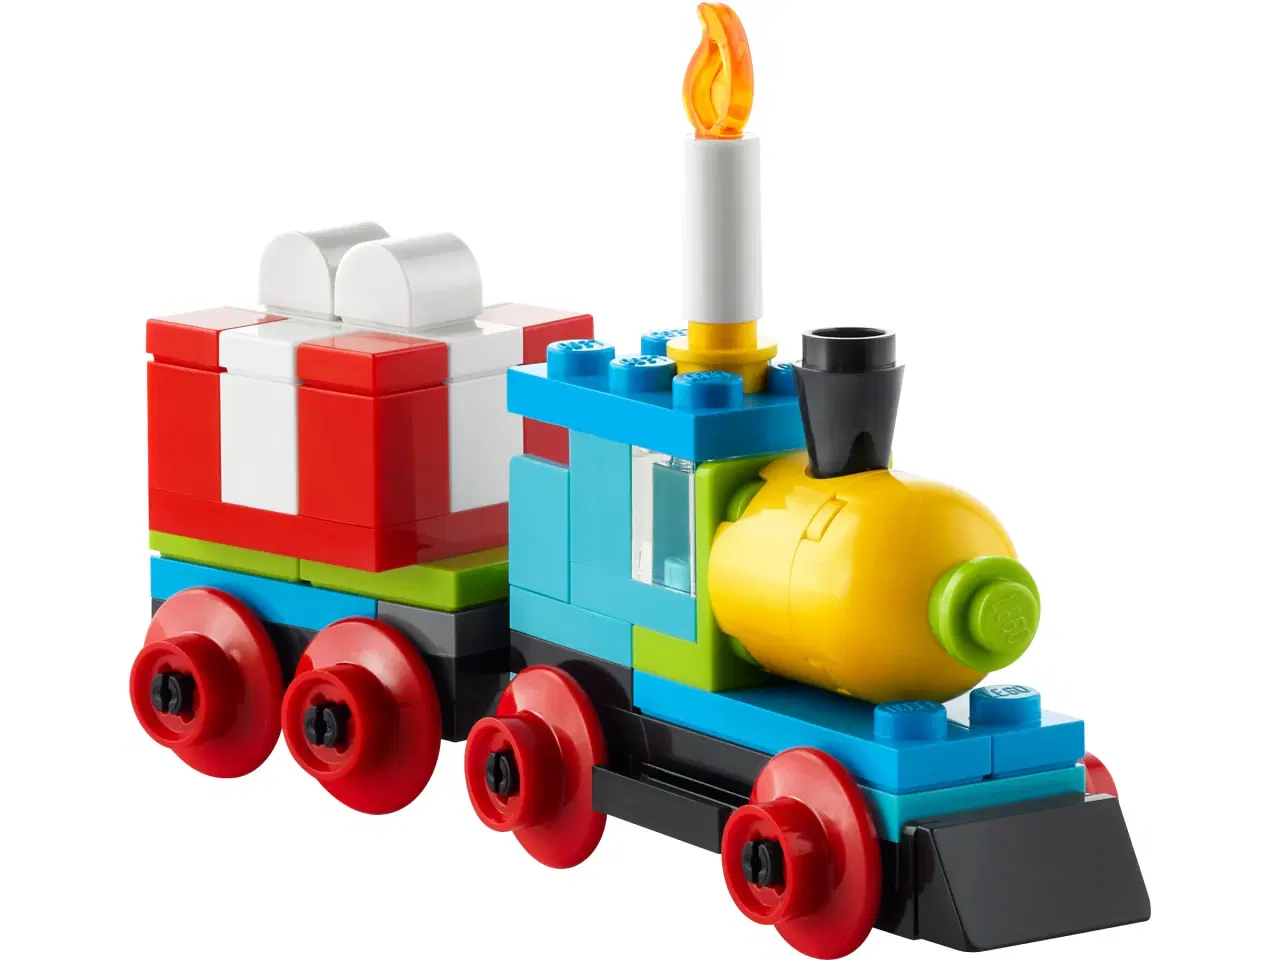 Billede 2 - Lego fødselsdagstog - helt nyt